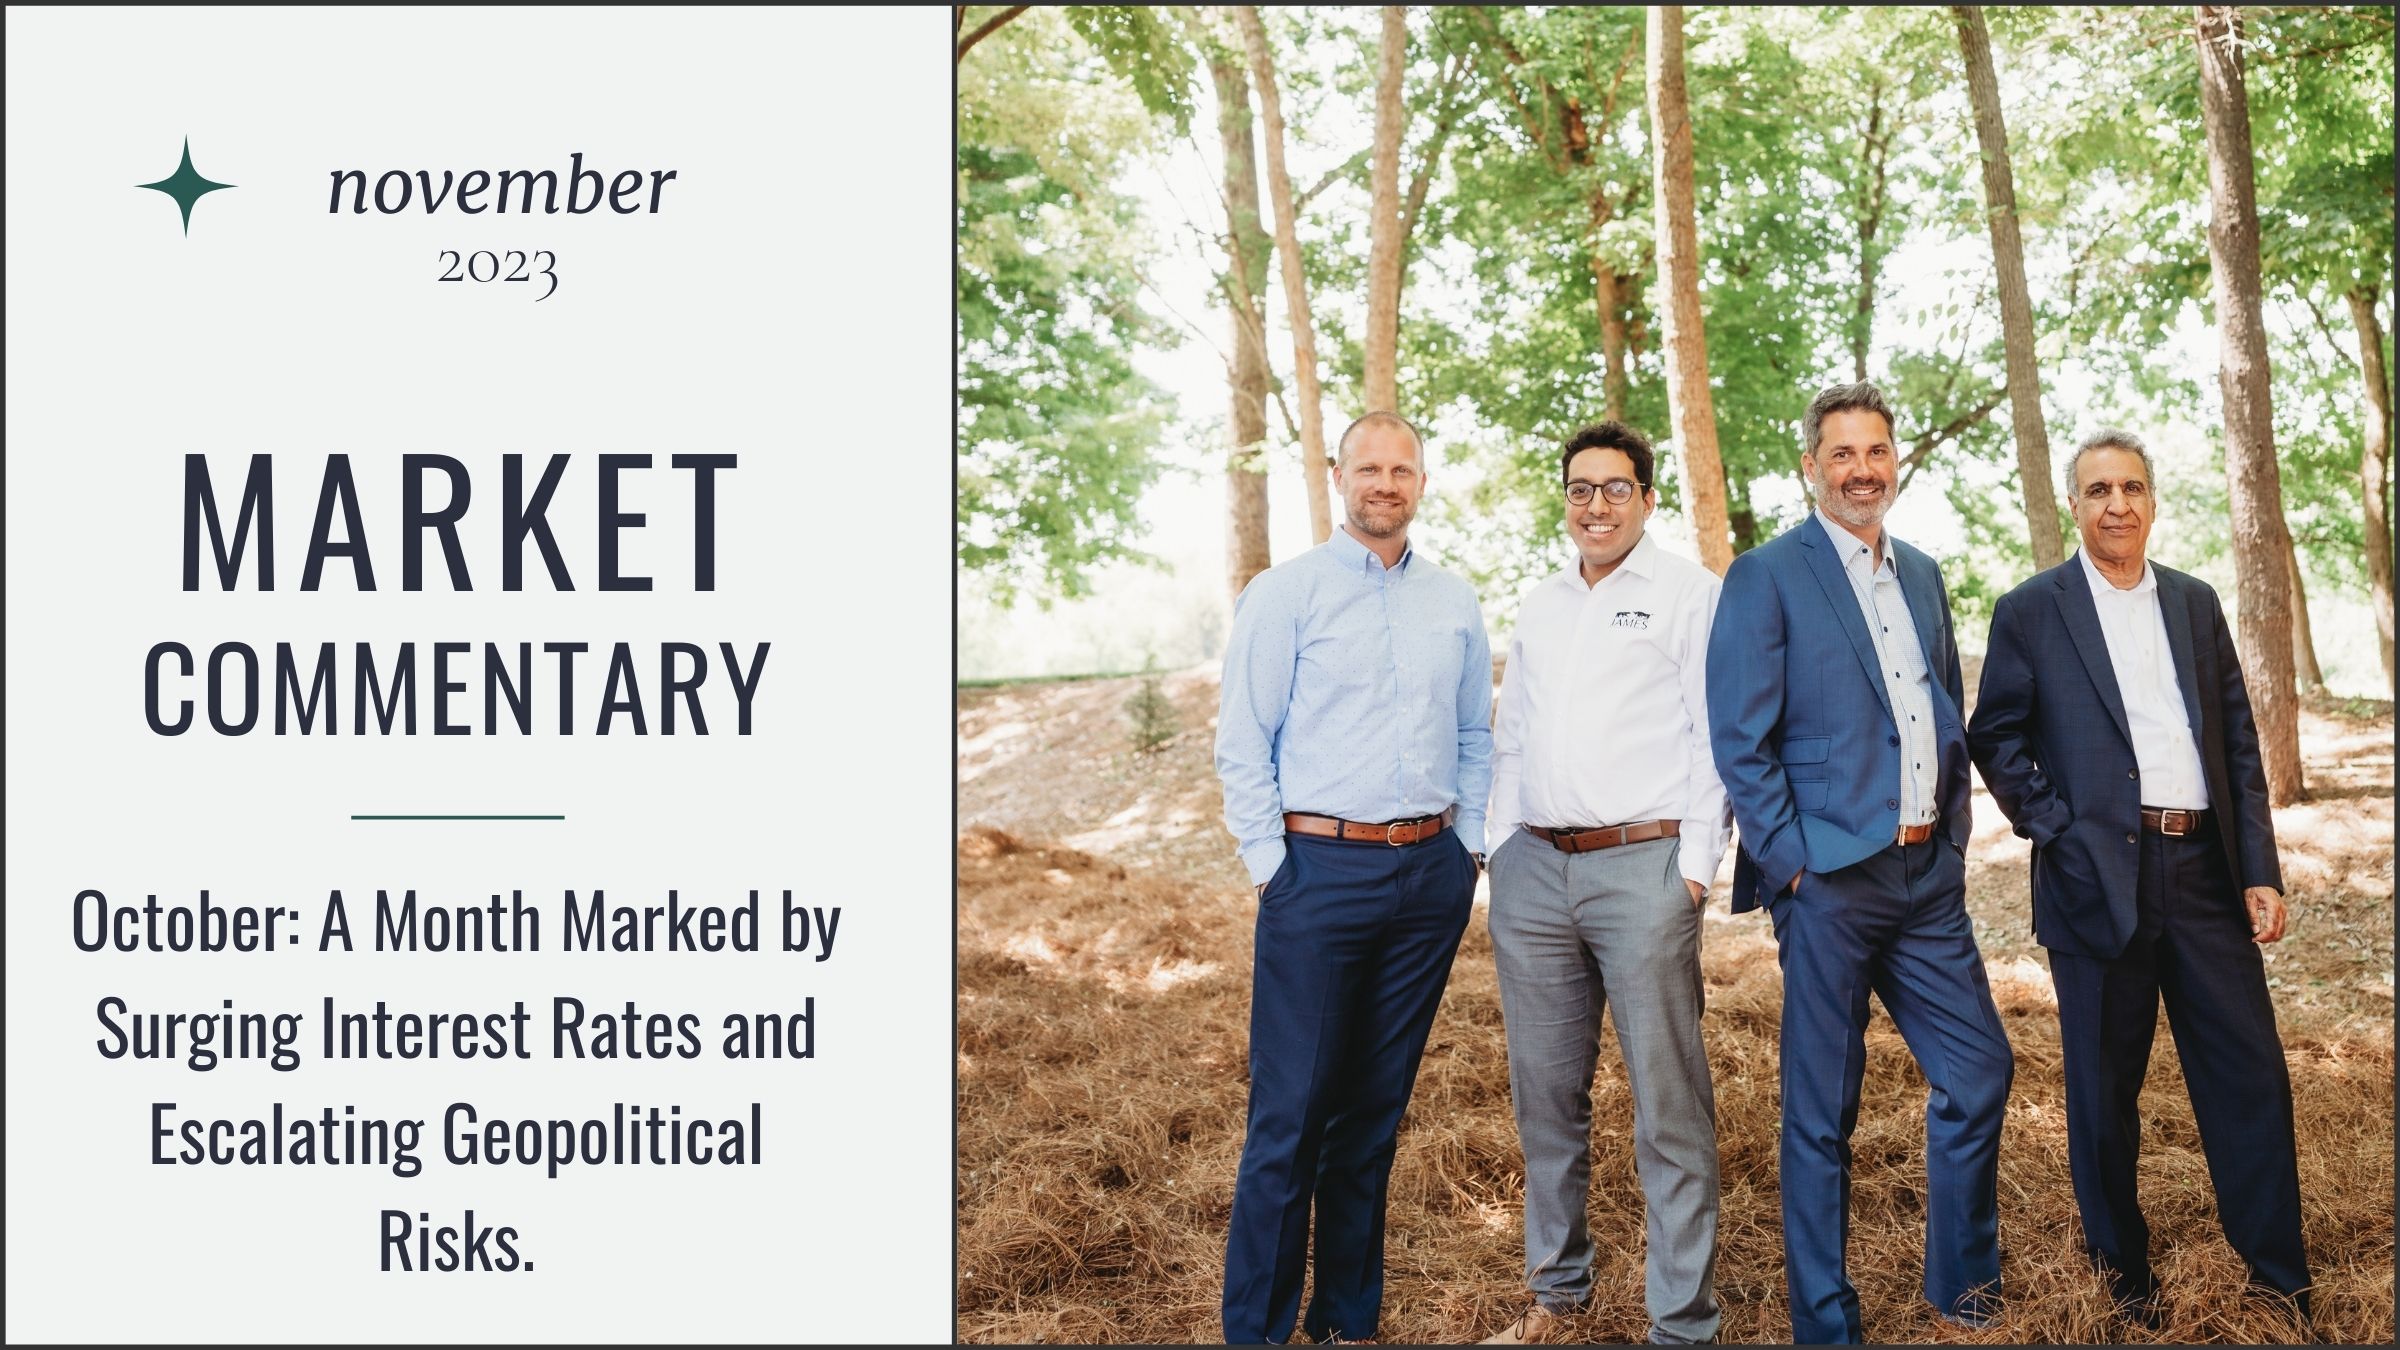 Market Commentary – November 2023